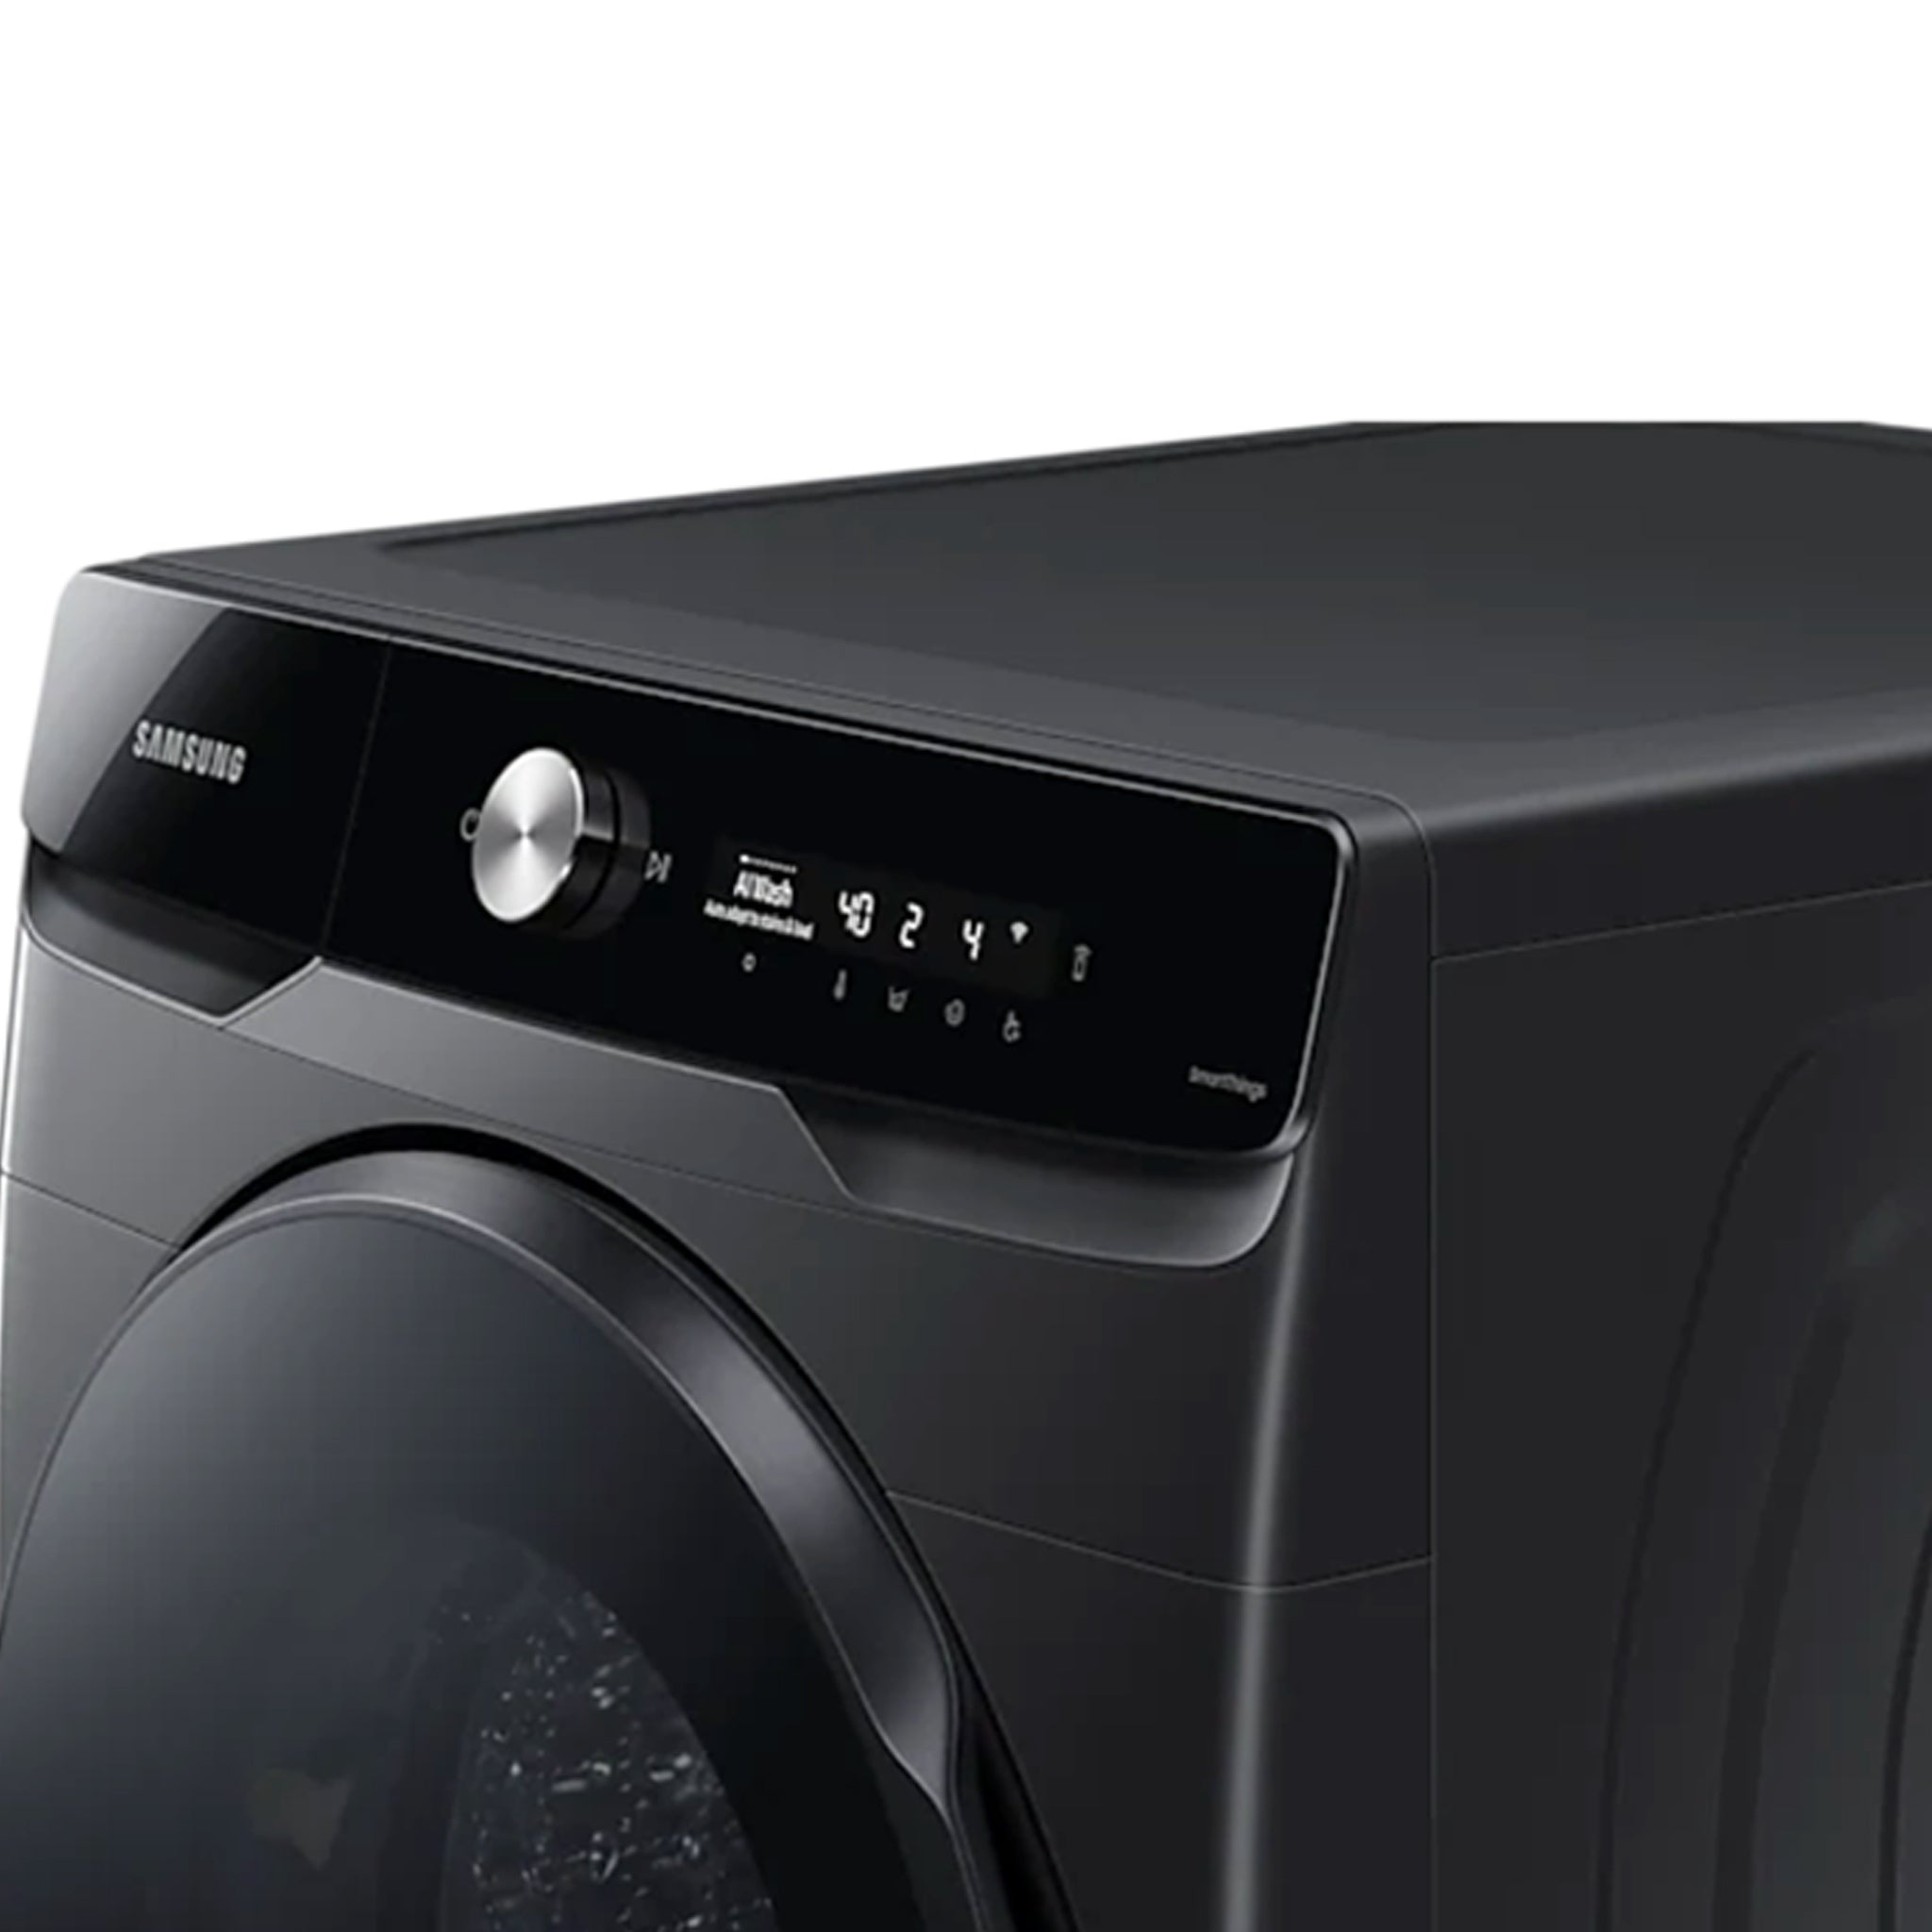 SAMSUNG 19KG WD19T6500GV/TC Front Load Washer & 11KG Dryer Washing Machine Samsung